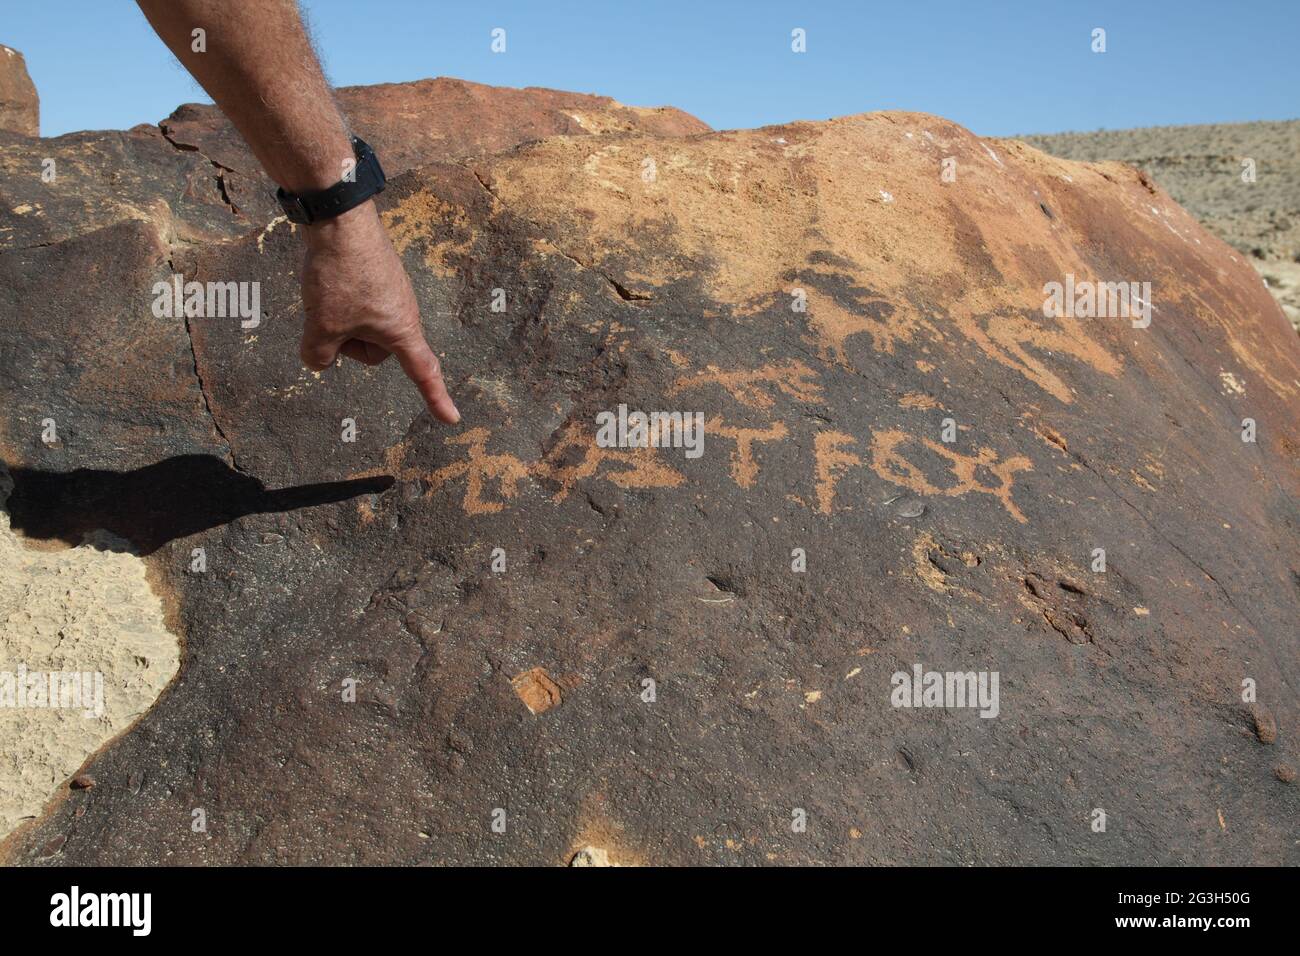 La mano del hombre apunta a antiguas tallas de roca de probablemente una forma temprana no identificada de letras árabes escritas hace 2000 años por los jinetes de camellos de Nabateans Foto de stock